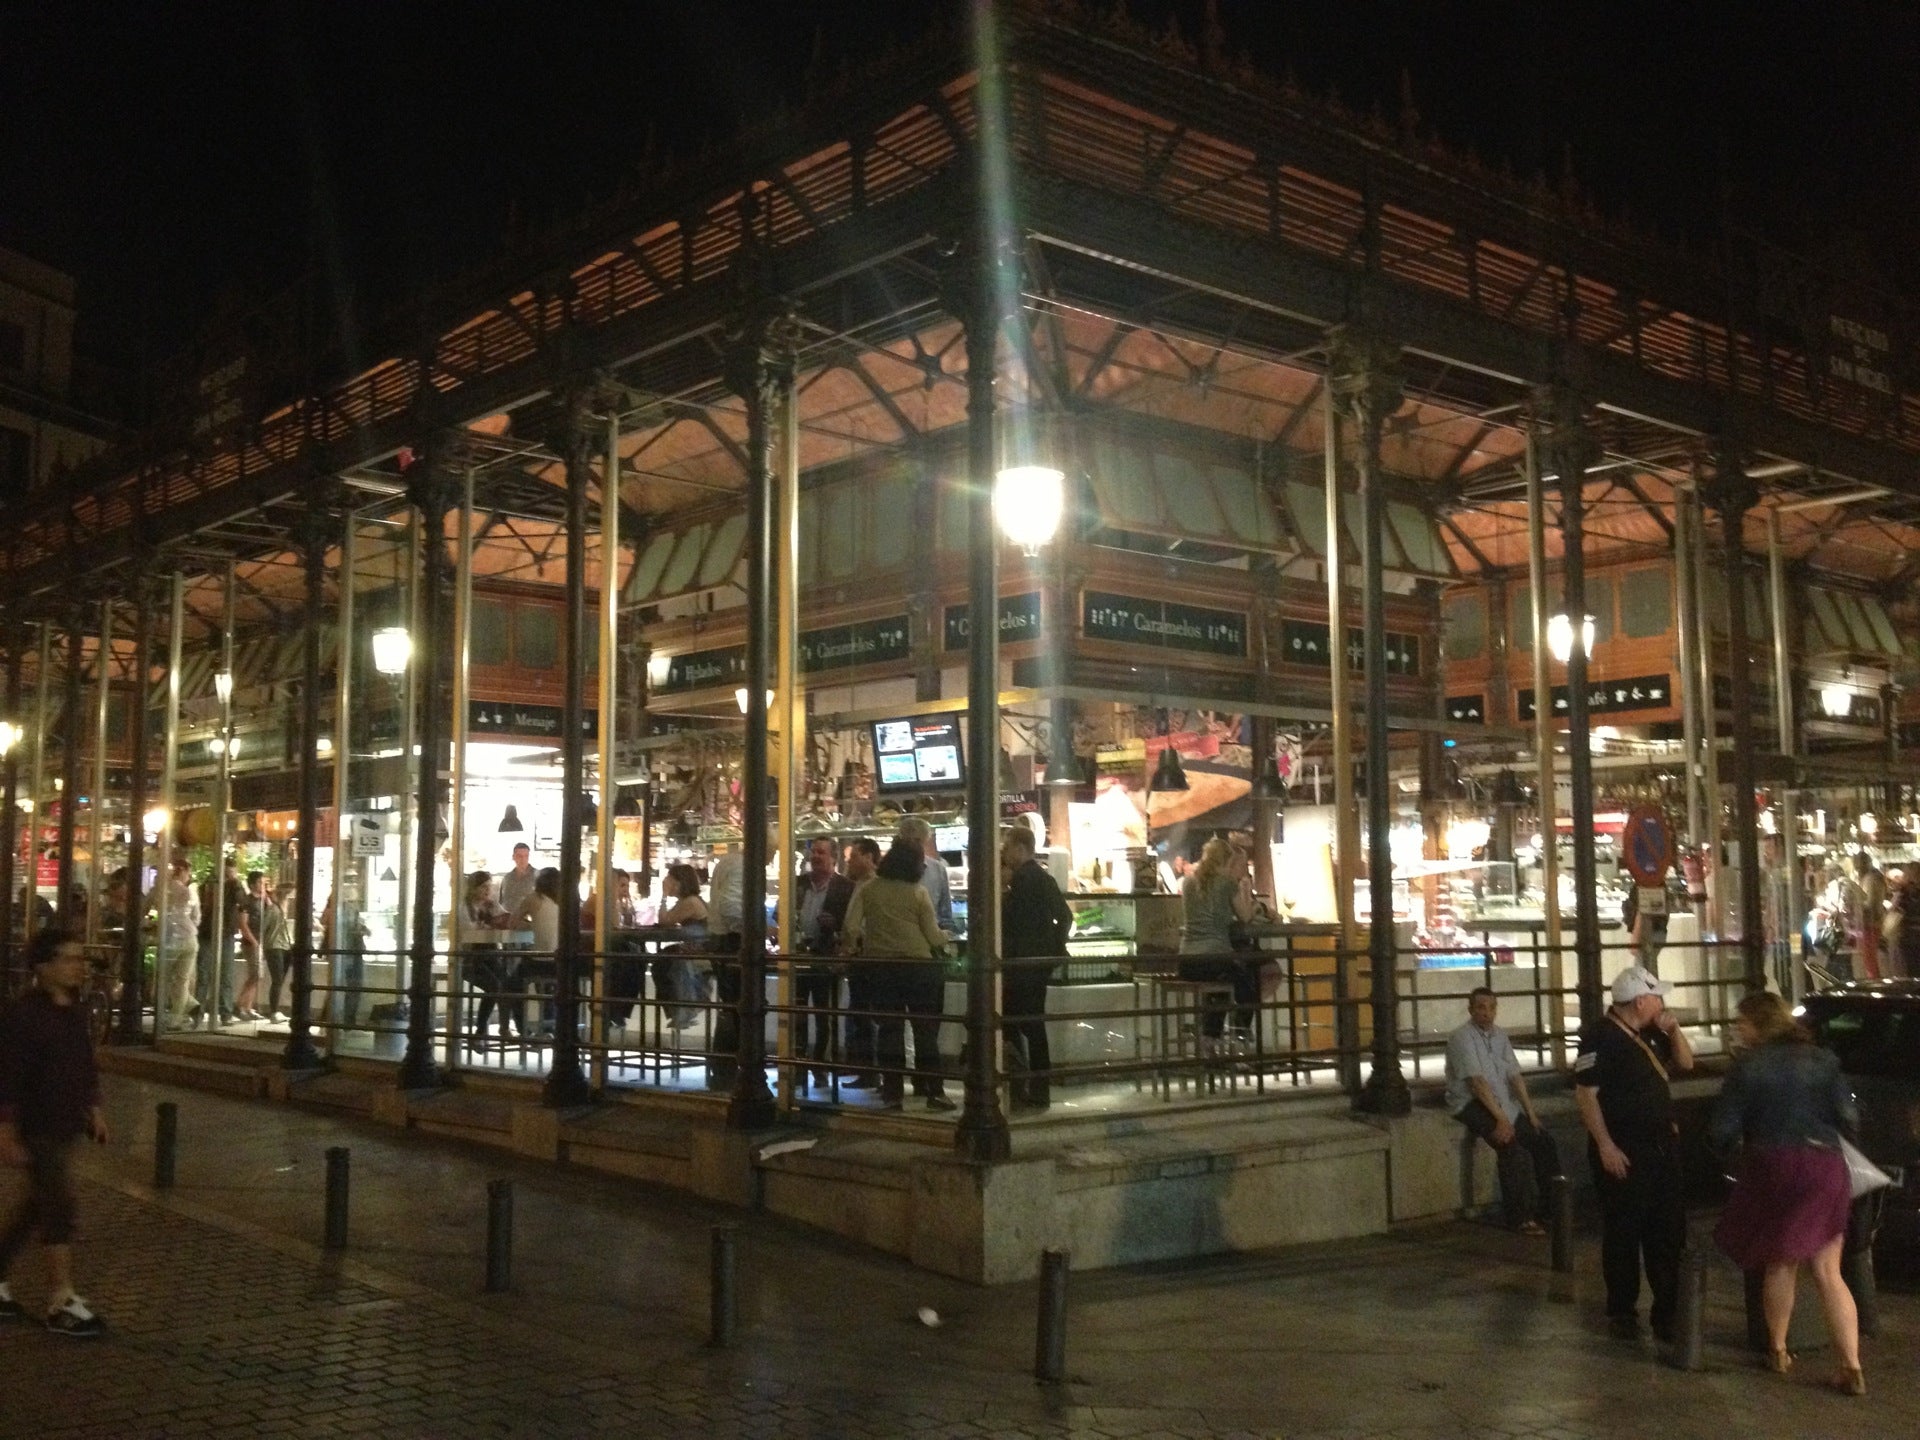 Mercado de San Miguel